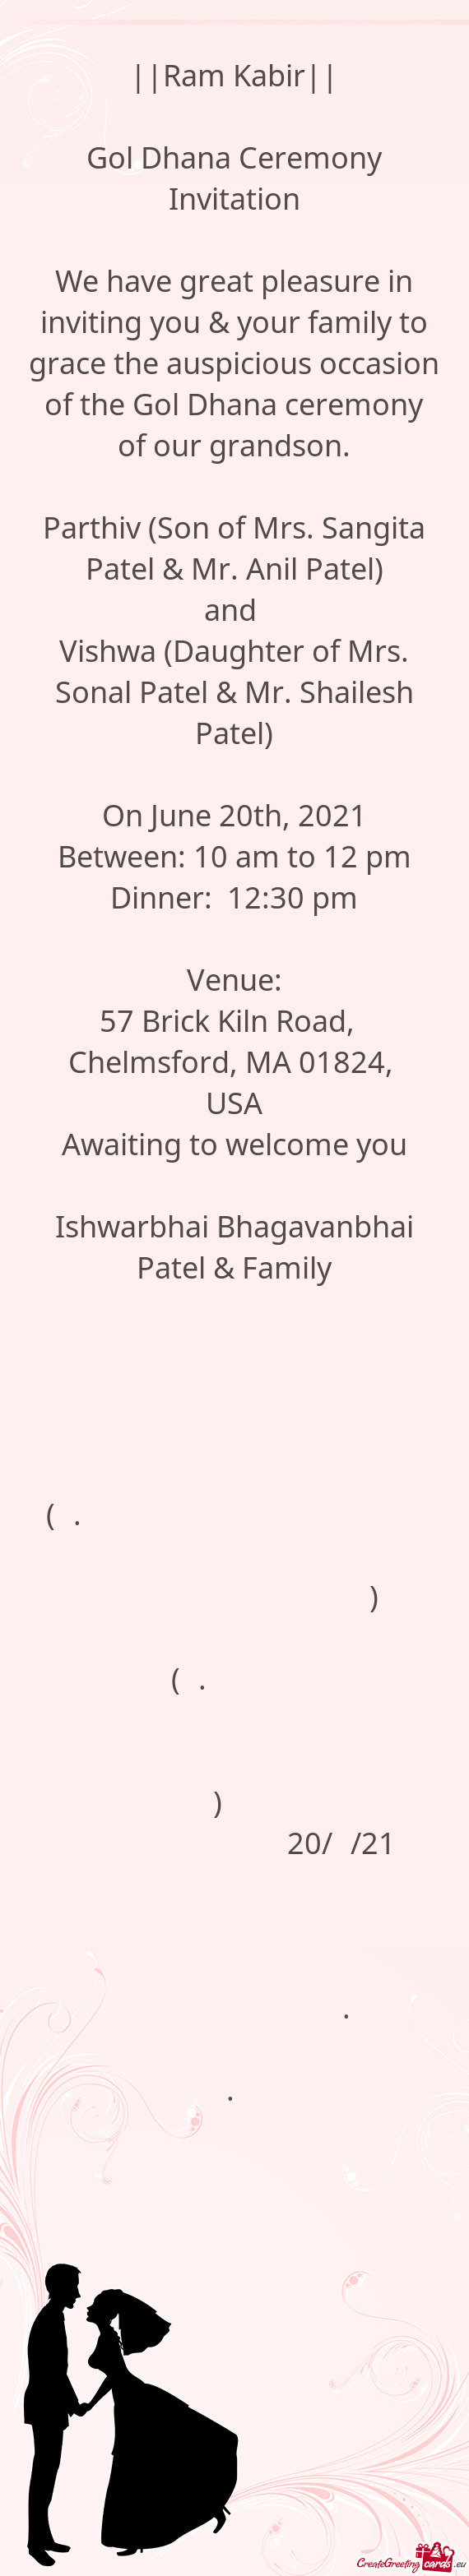 Ishwarbhai Bhagavanbhai Patel & Family